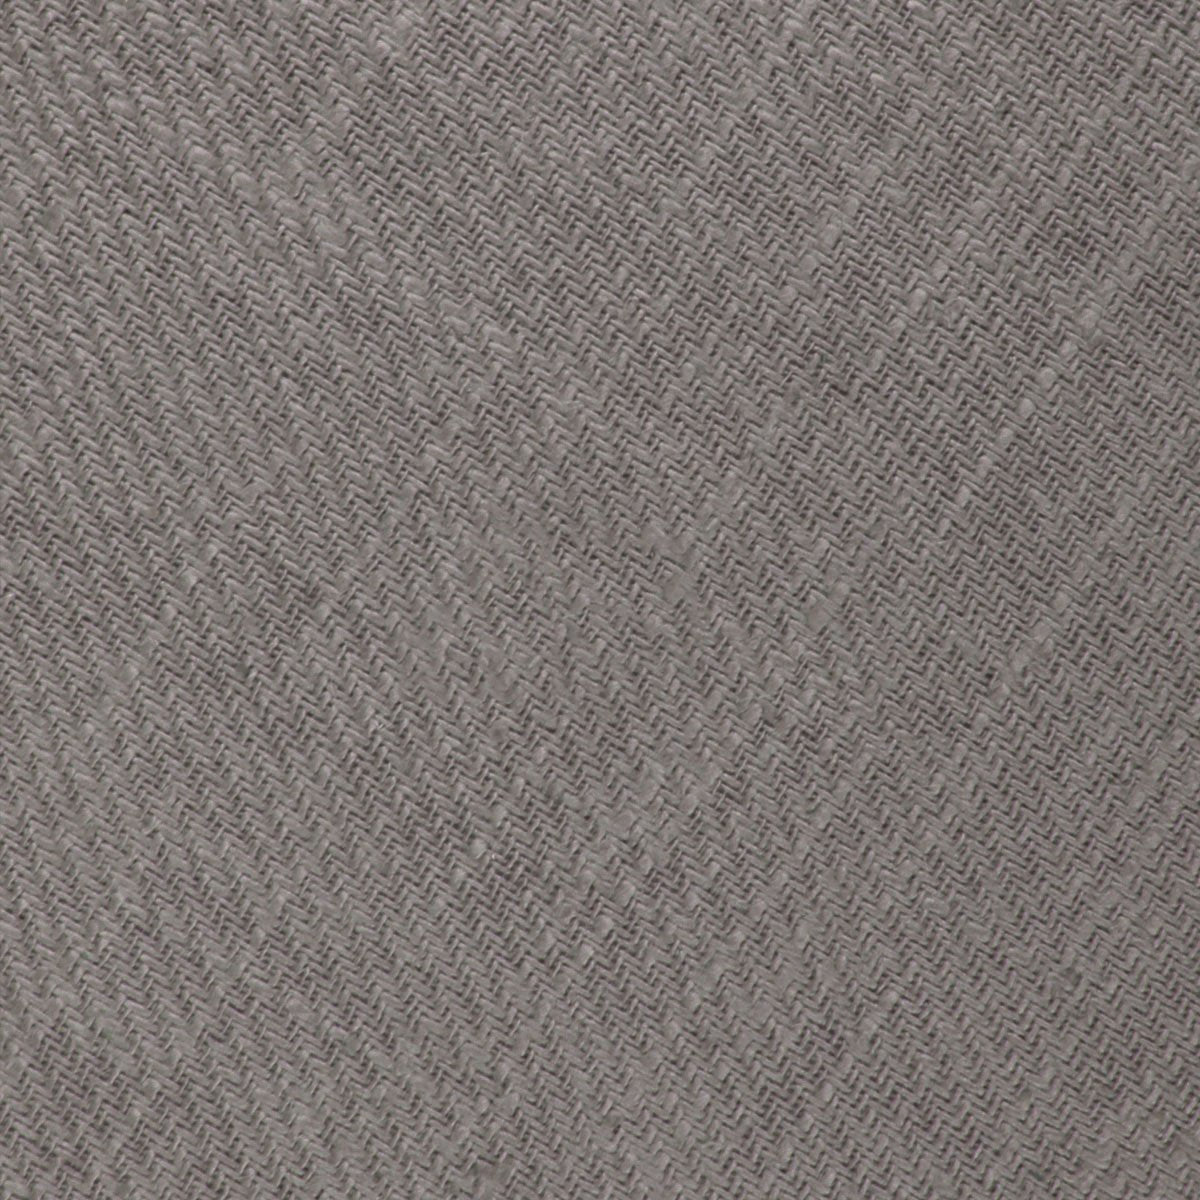 Stone Grey Portobello Slub Linen Skinny Tie Fabric